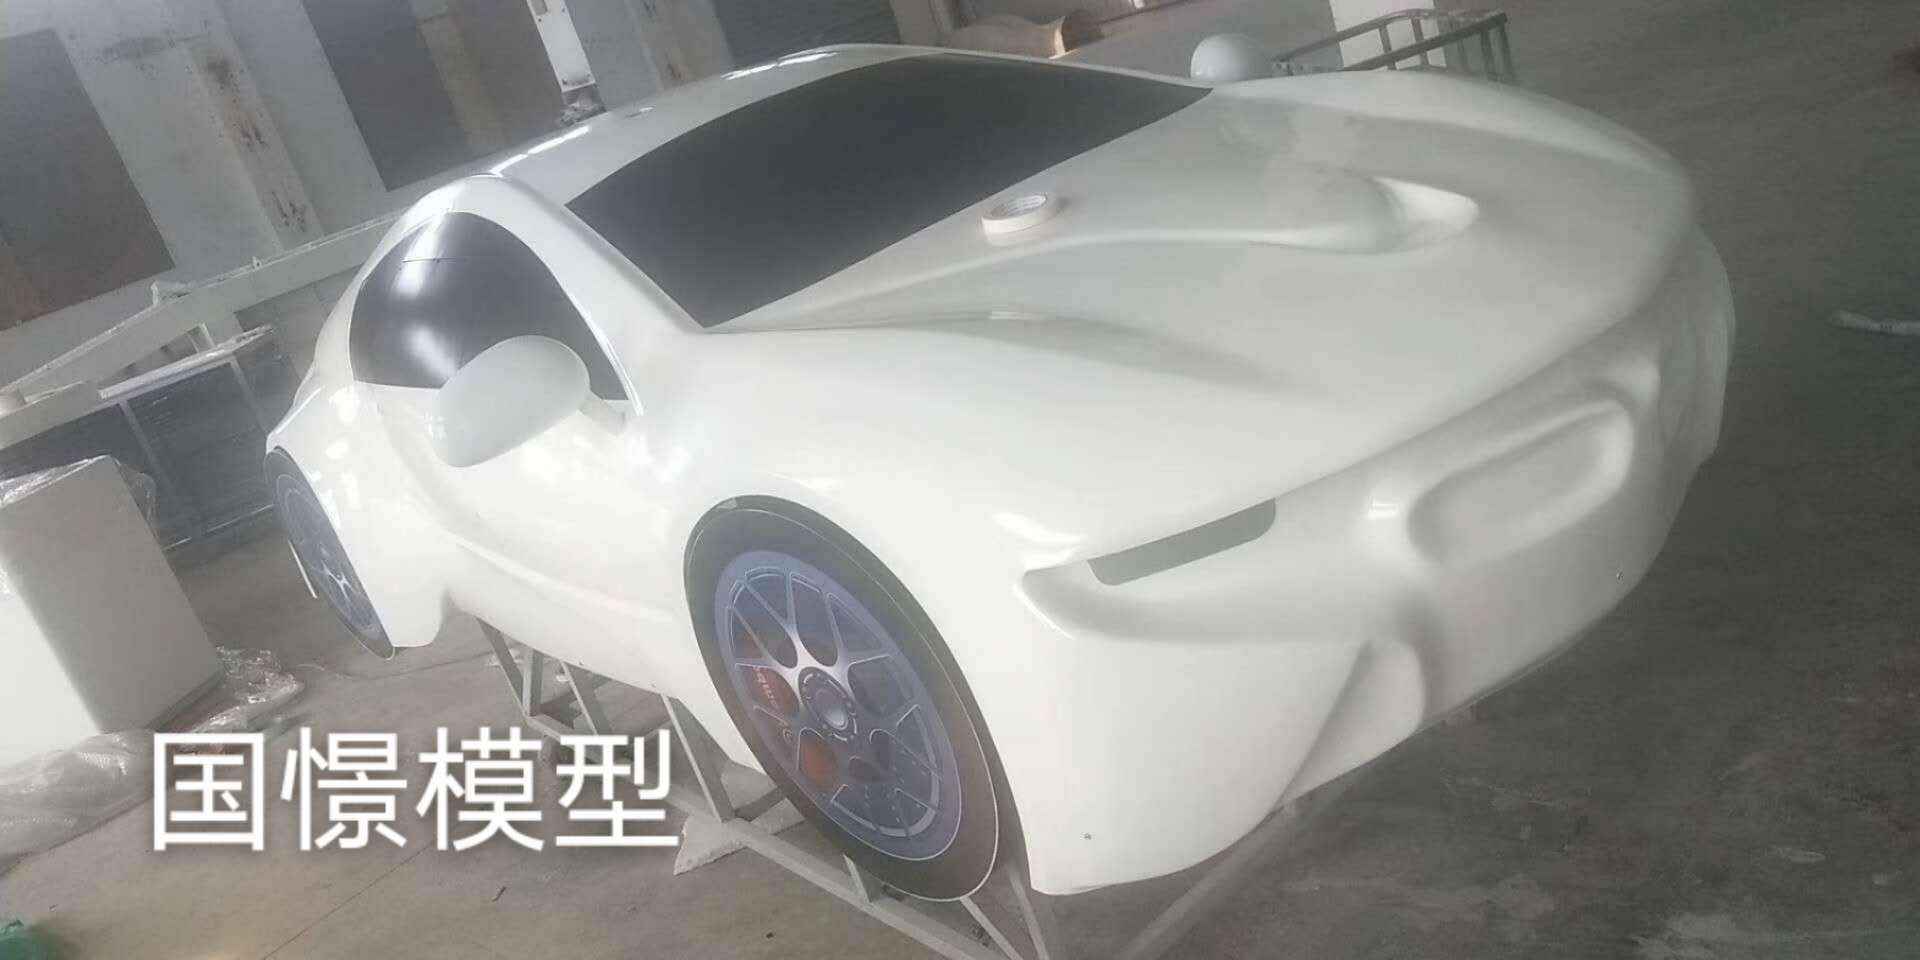 饶阳县车辆模型